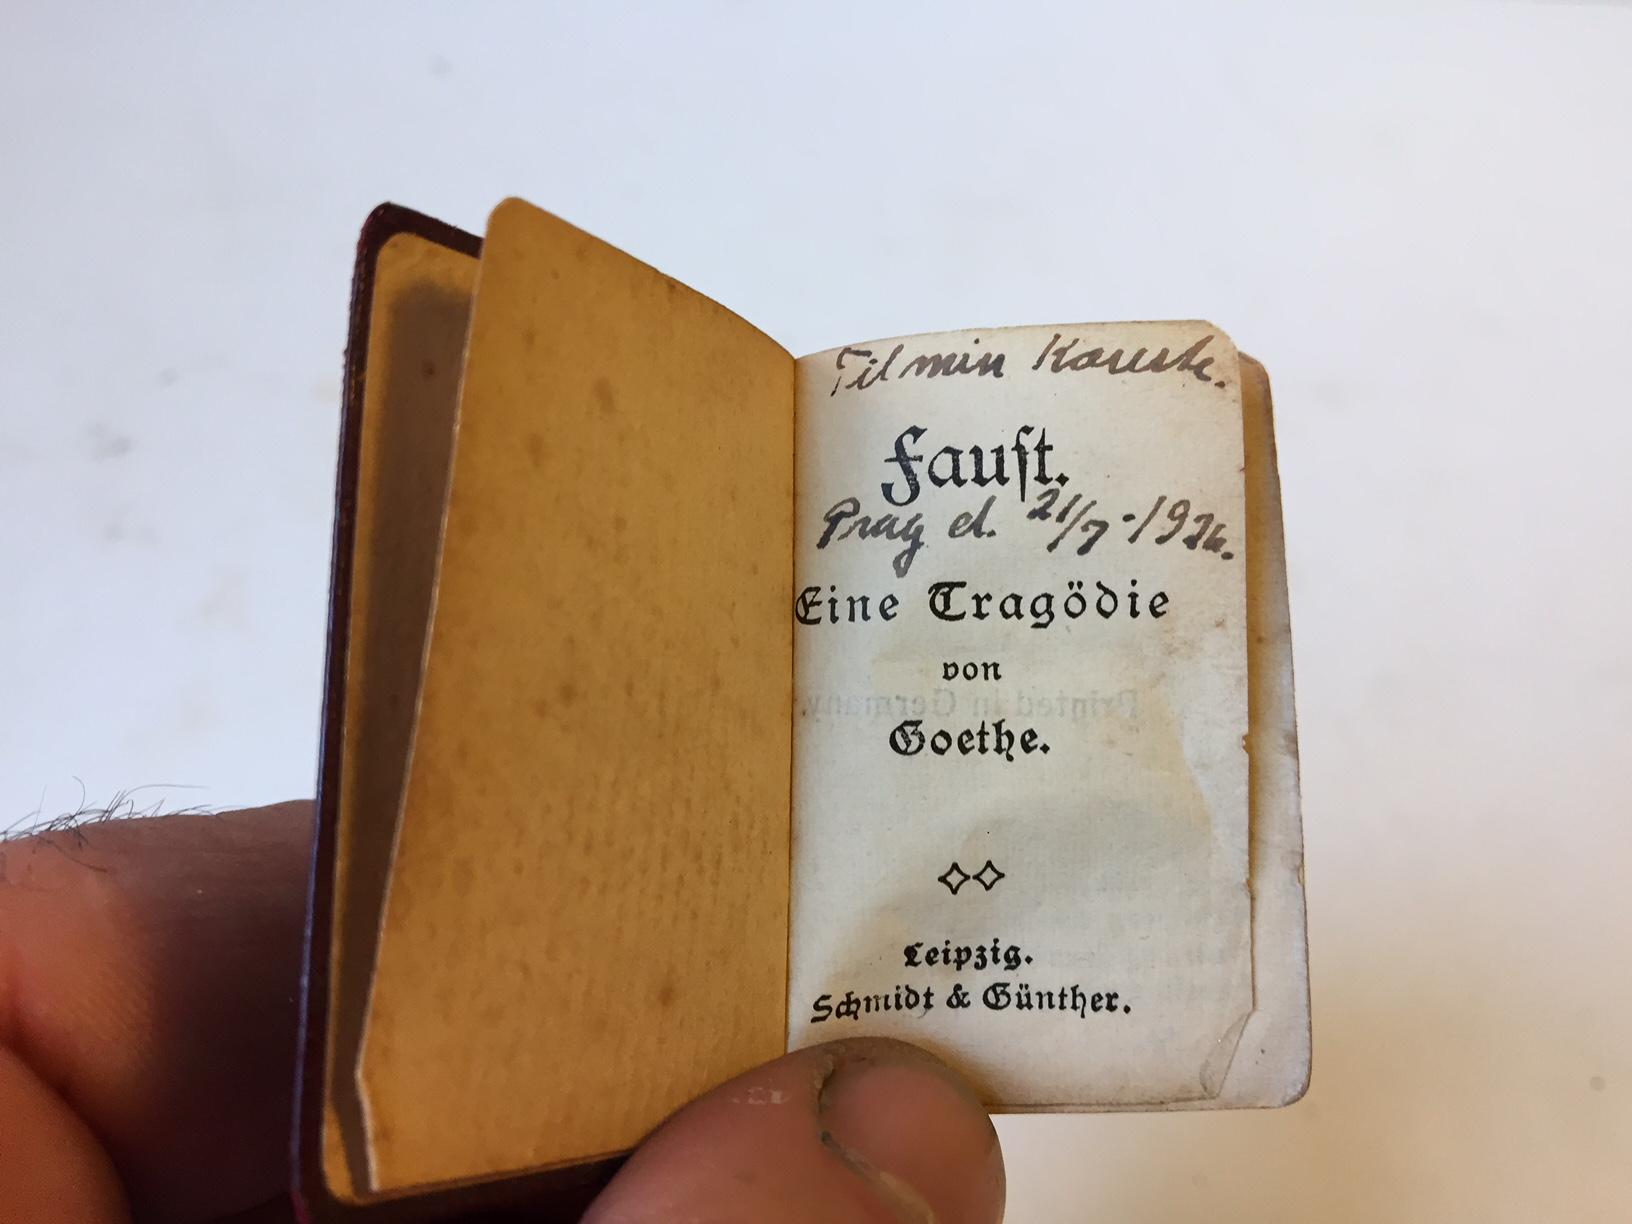 Faust volume 1 & 2 par Johann Wolgang Goethe. Imprimé dans cette version miniature par Schmidt & Günther à Leipzig, Allemagne, en 1907. Ils présentent les mêmes qualités que les classiques, à savoir une reliure en cuir et des pages dorées.